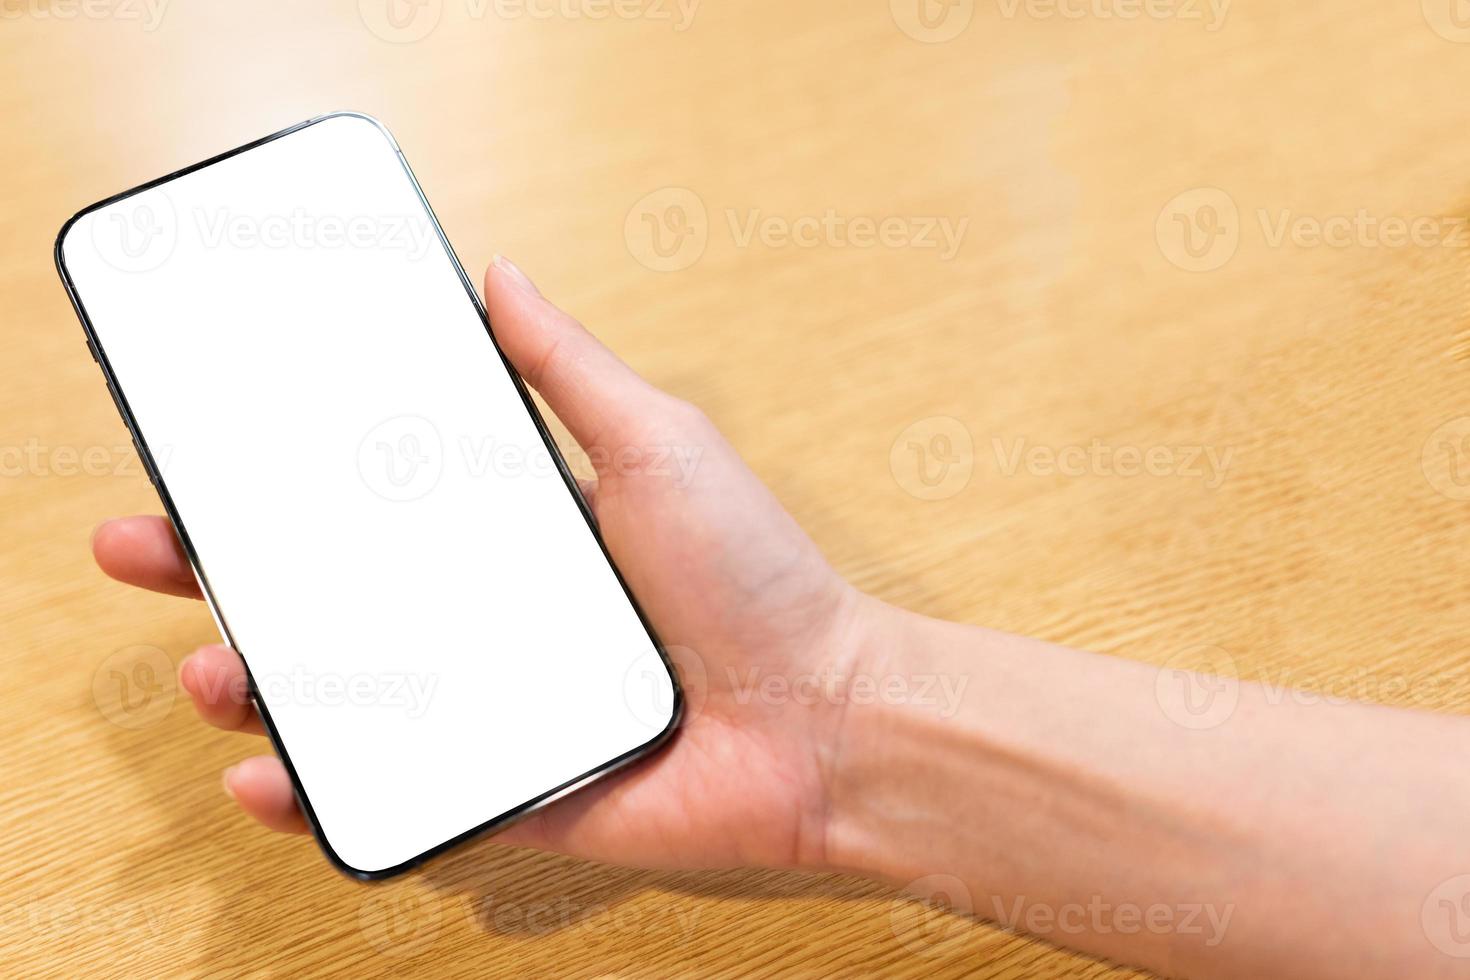 novo modelo de smartphone com tela cheia na mão direita da mulher. feche a mão segurando o smartphone preto com tela branca. foto